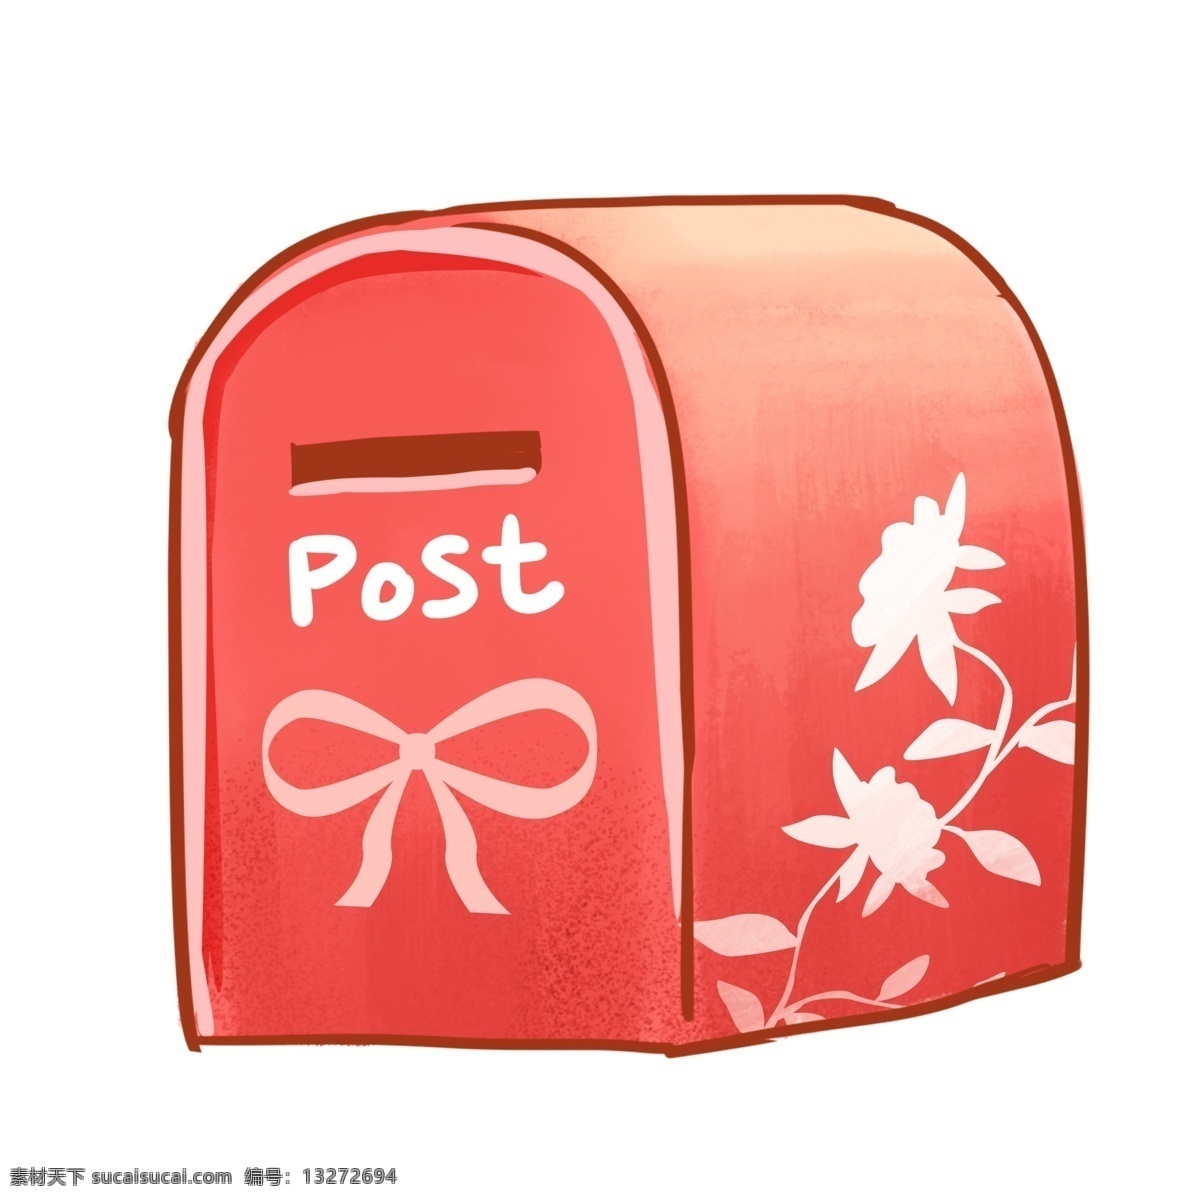 手绘 红色 创意 邮箱 套 图 创意邮箱 邮筒 邮政 铁艺 装饰图案